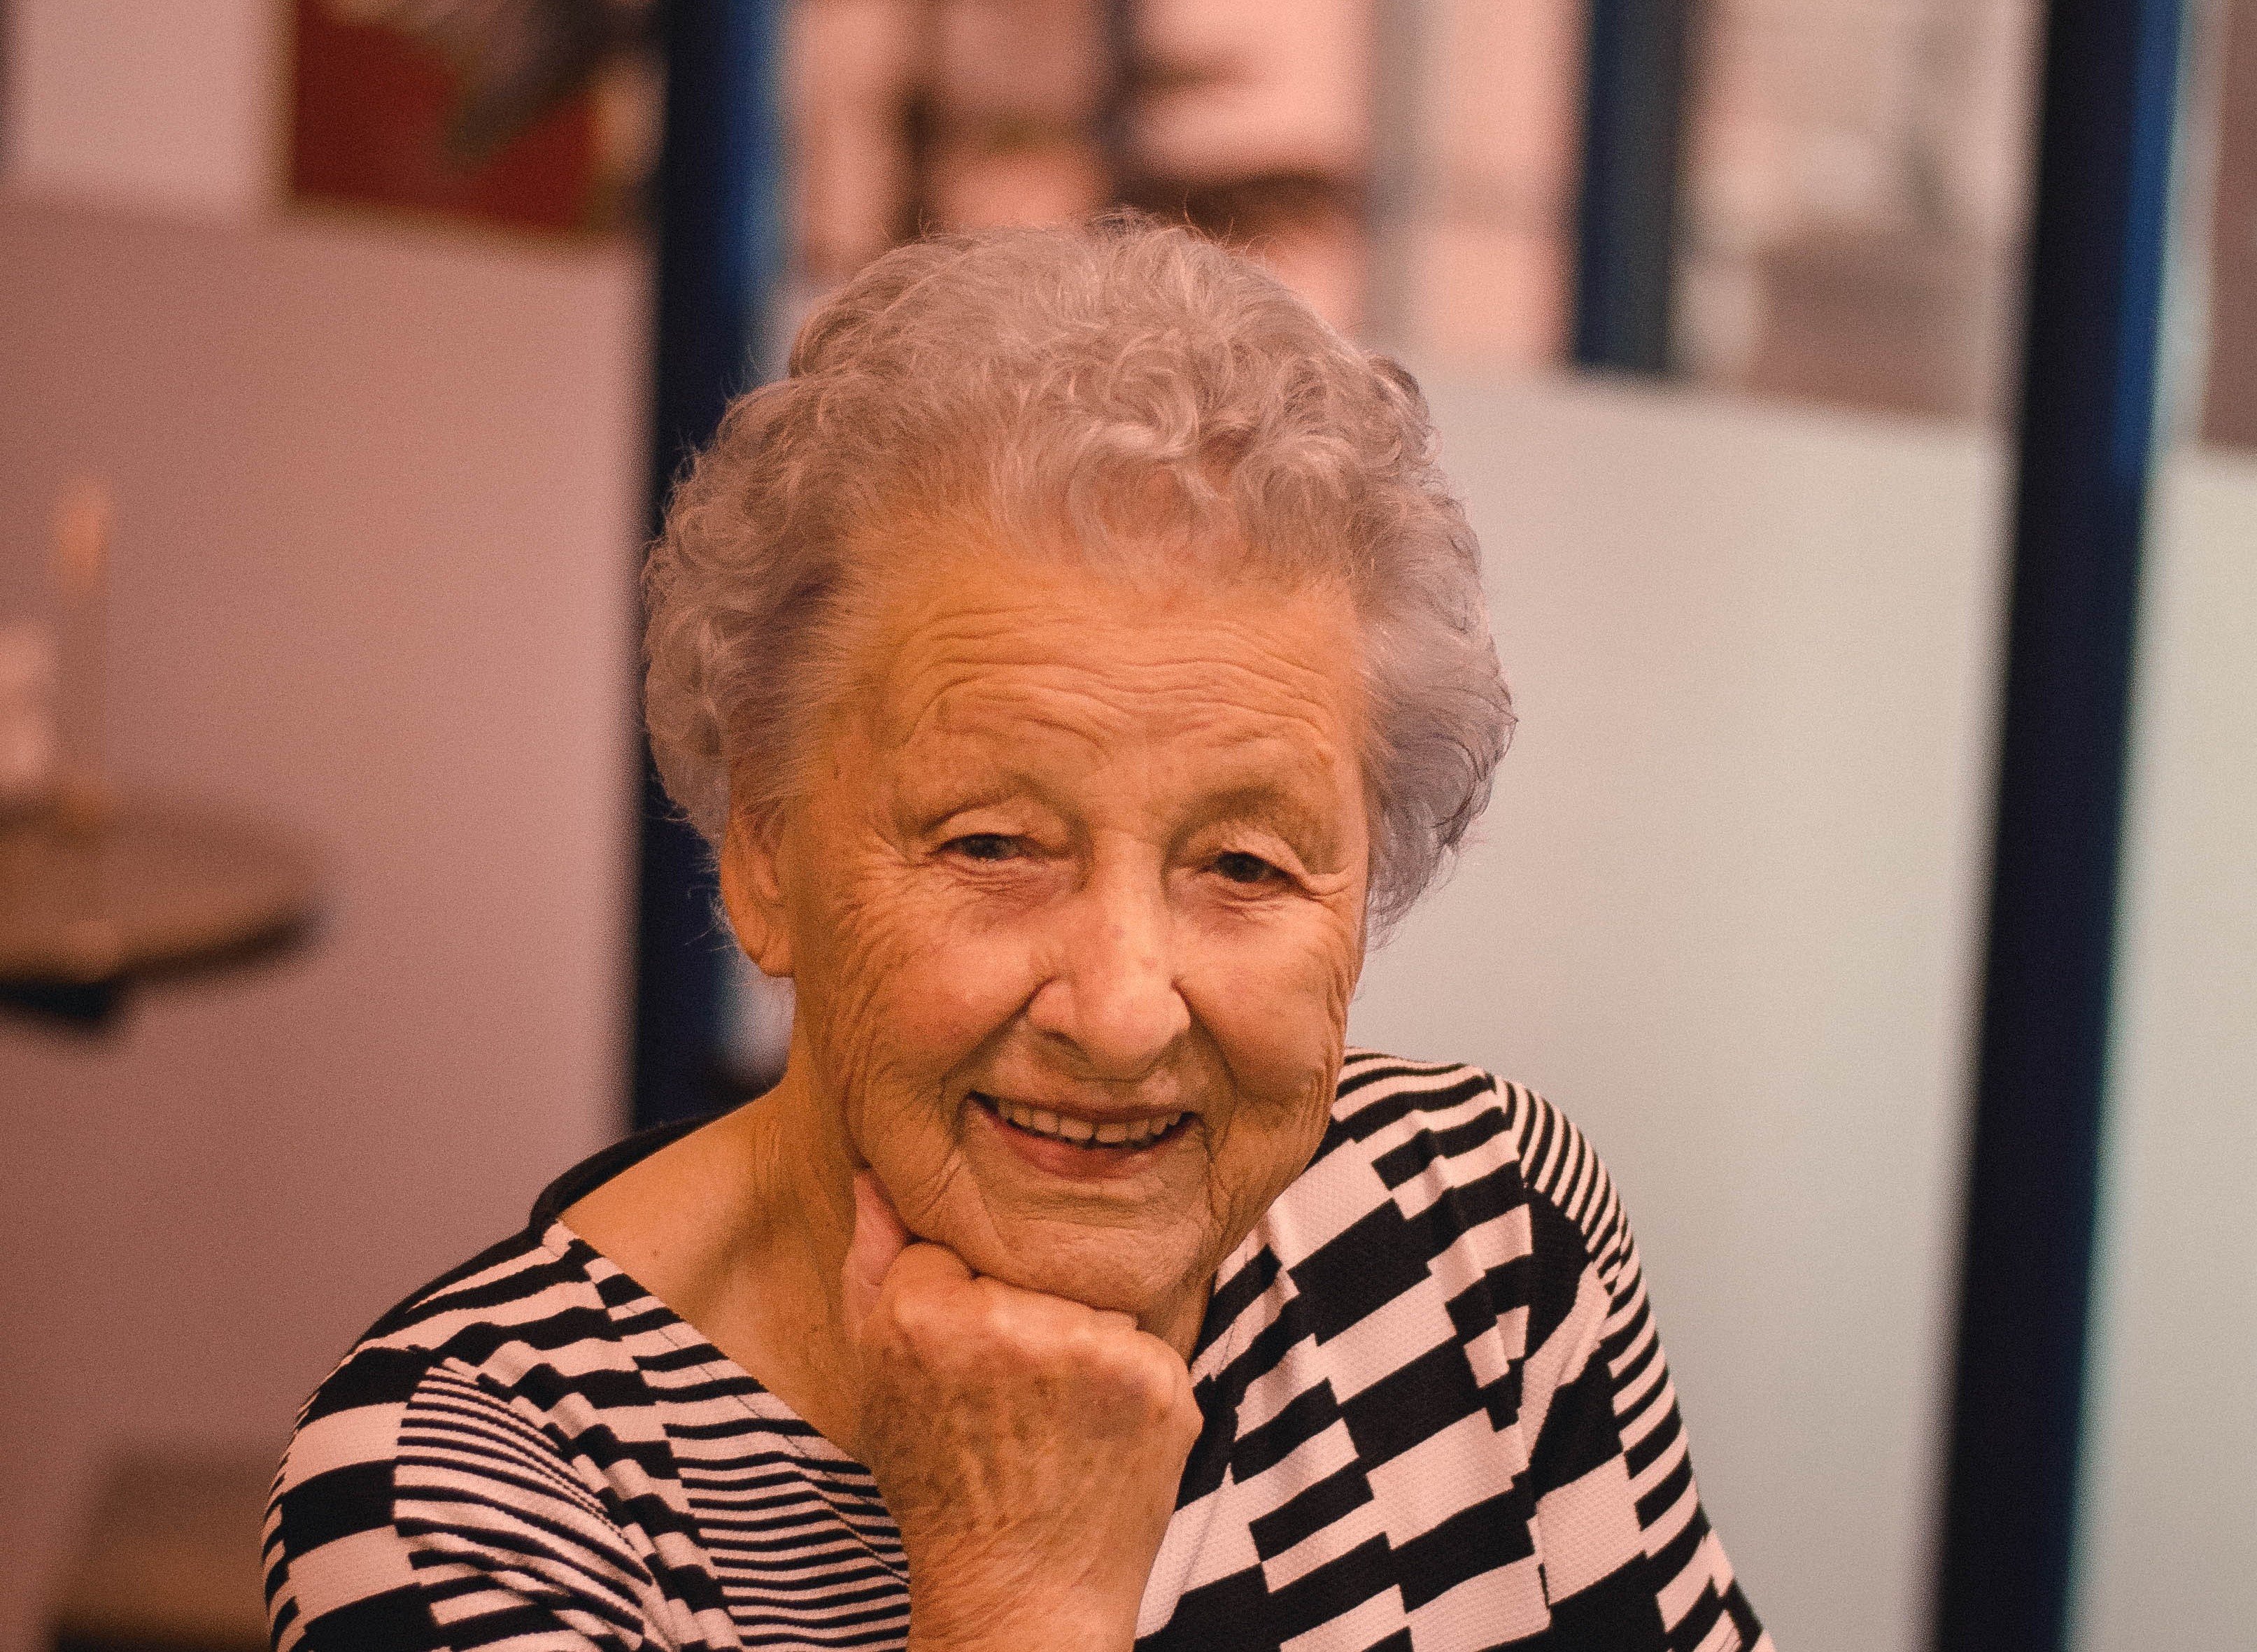 Die süße alte Dame lächelt schadenfroh, als sie den OP erblickt | Quelle: Pexels